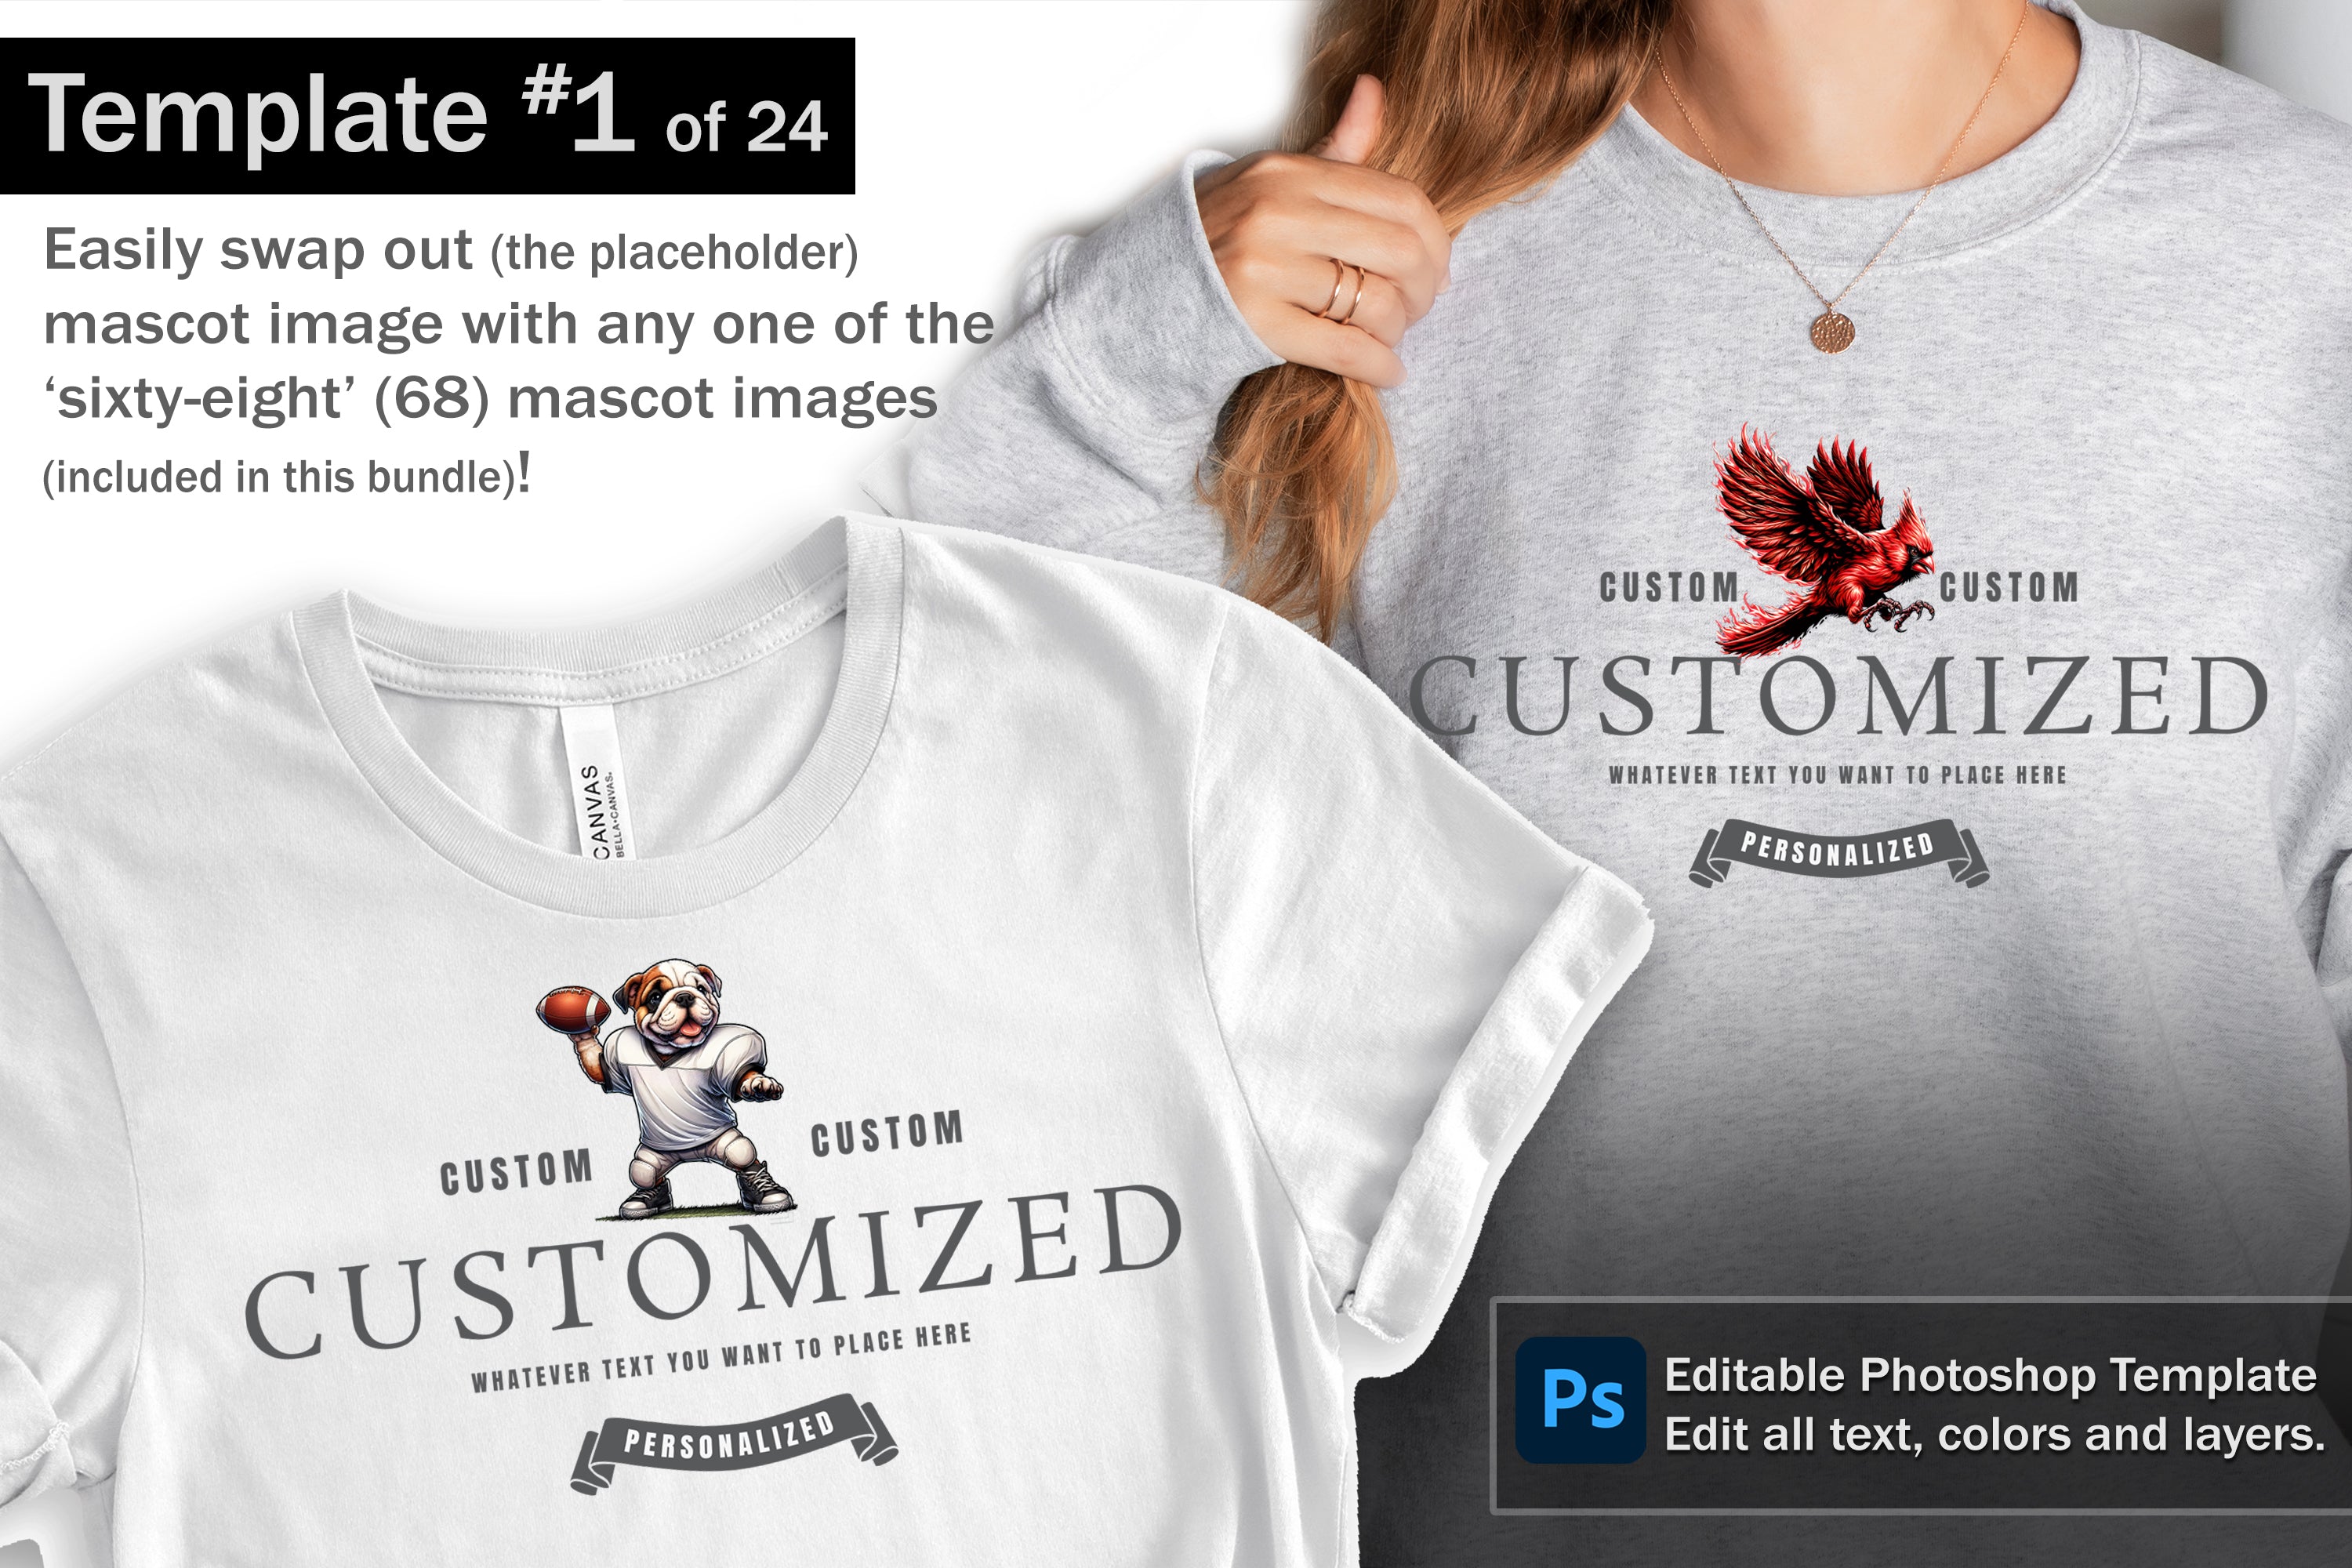 Cardinal Logo and DIY T-shirt Design Bundle